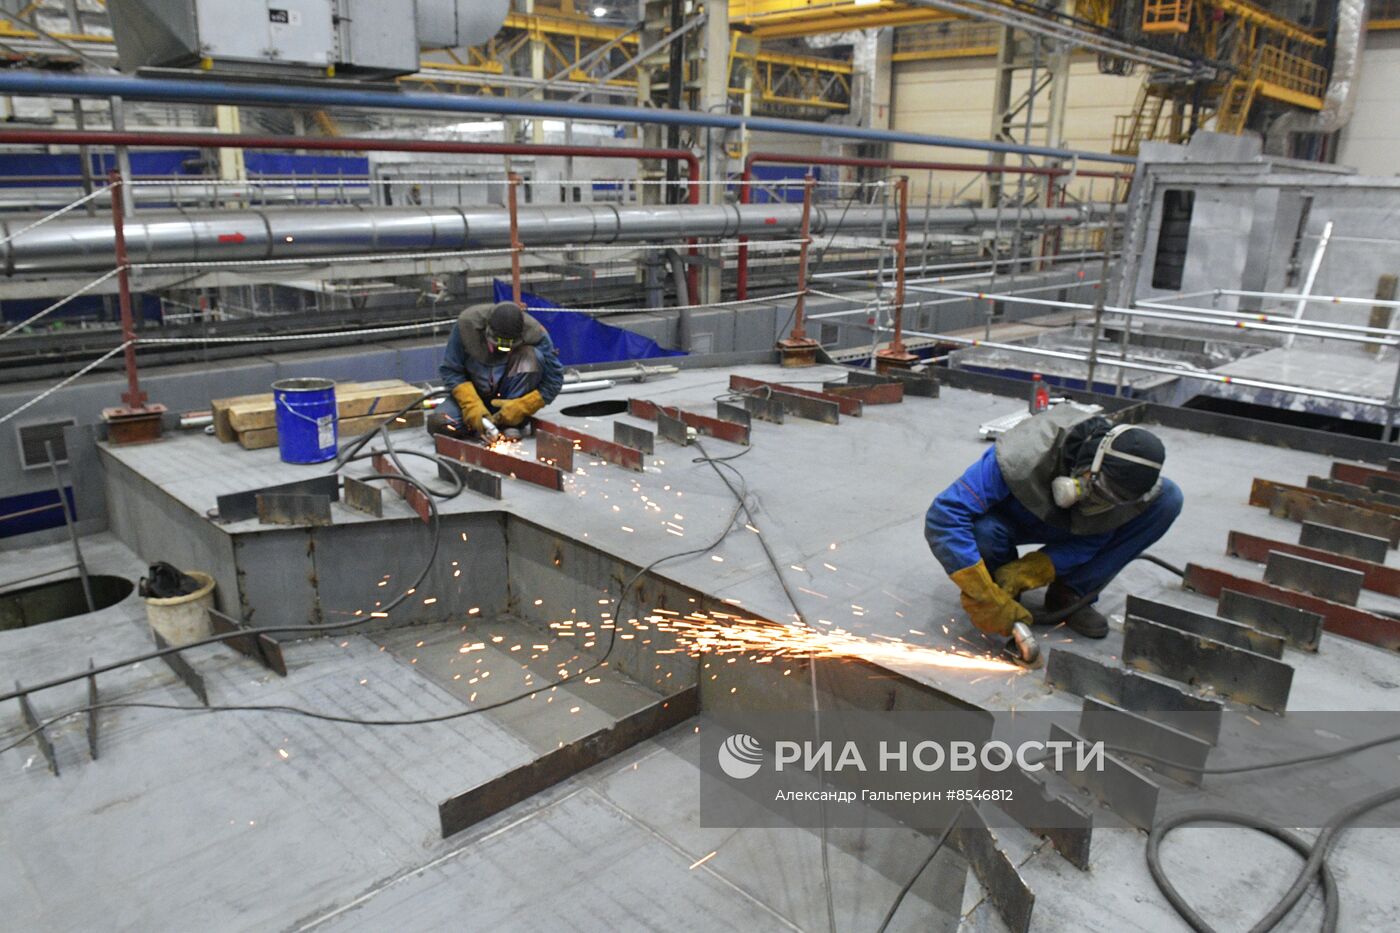 Строительство скоростных катамаранов на Средне-Невском судостроительном заводе